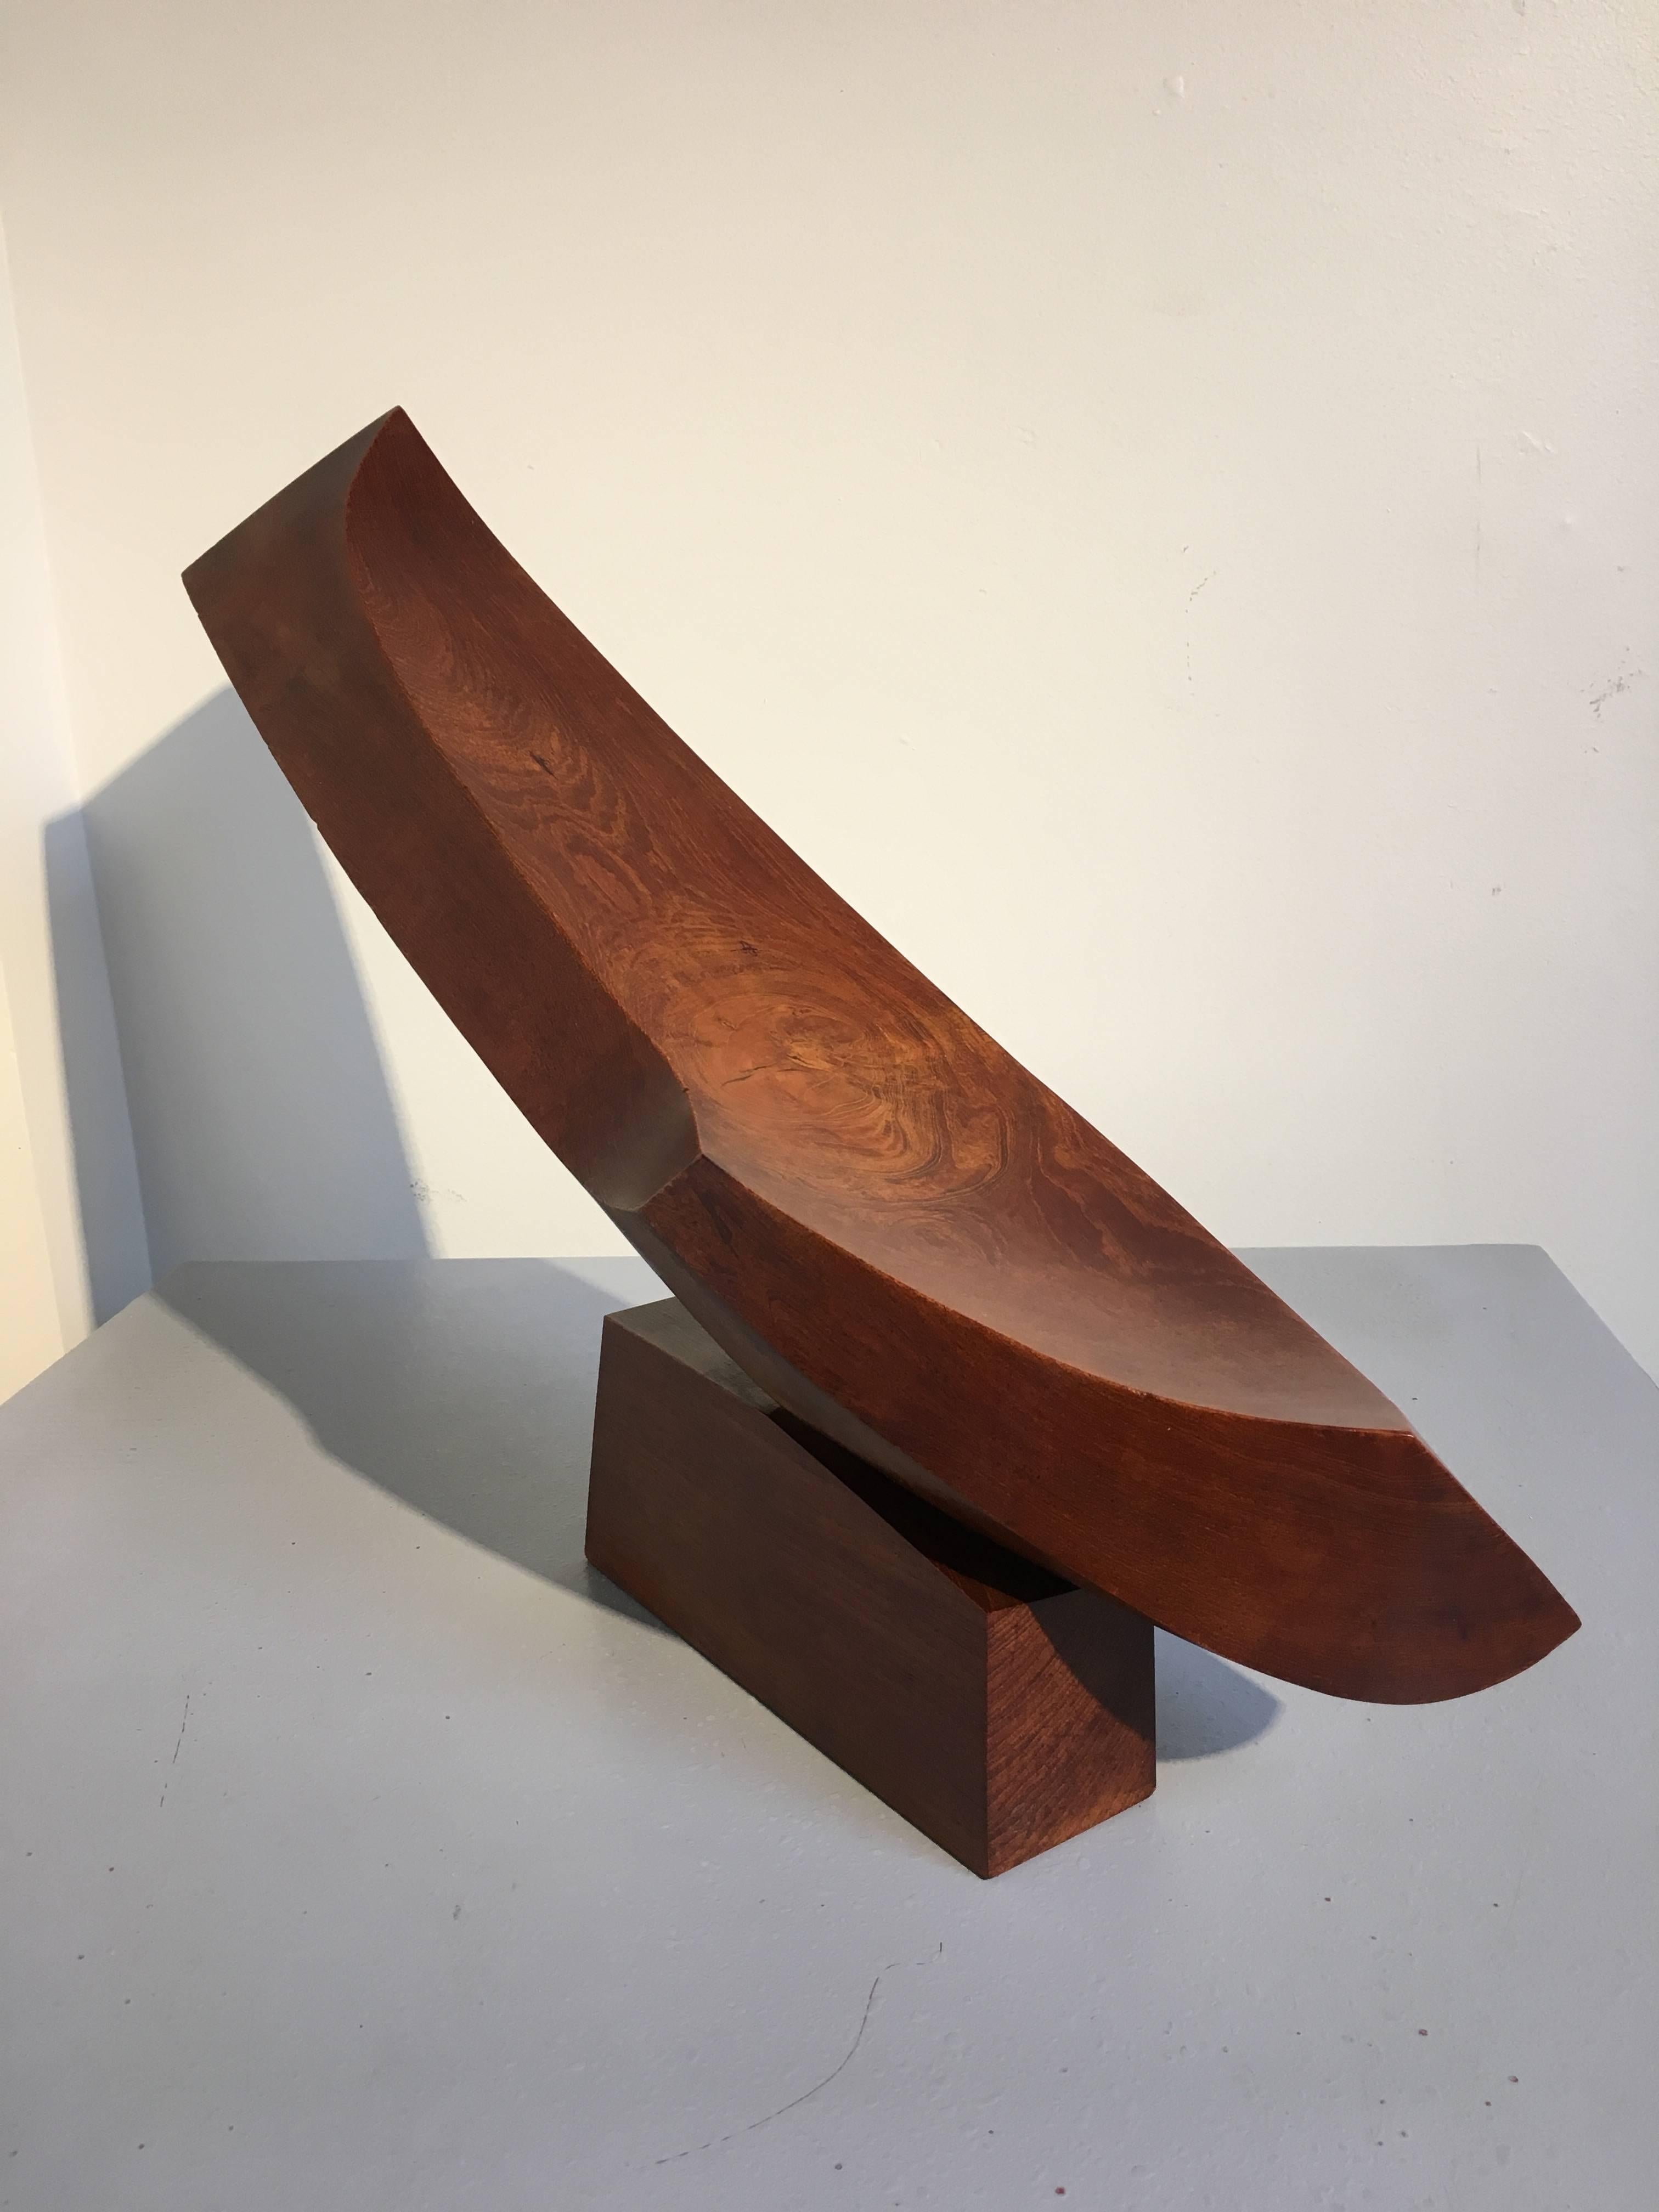 Eine kraftvolle abstrakte expressionistische Skulptur aus ausgehöhltem Ulmenholz des japanischen Künstlers Takao Kimura aus den 1970er Jahren. Der aus zwei Teilen geschnitzte, gewölbte Körper spielt dramatisch mit den schrägen Linien der Seiten und